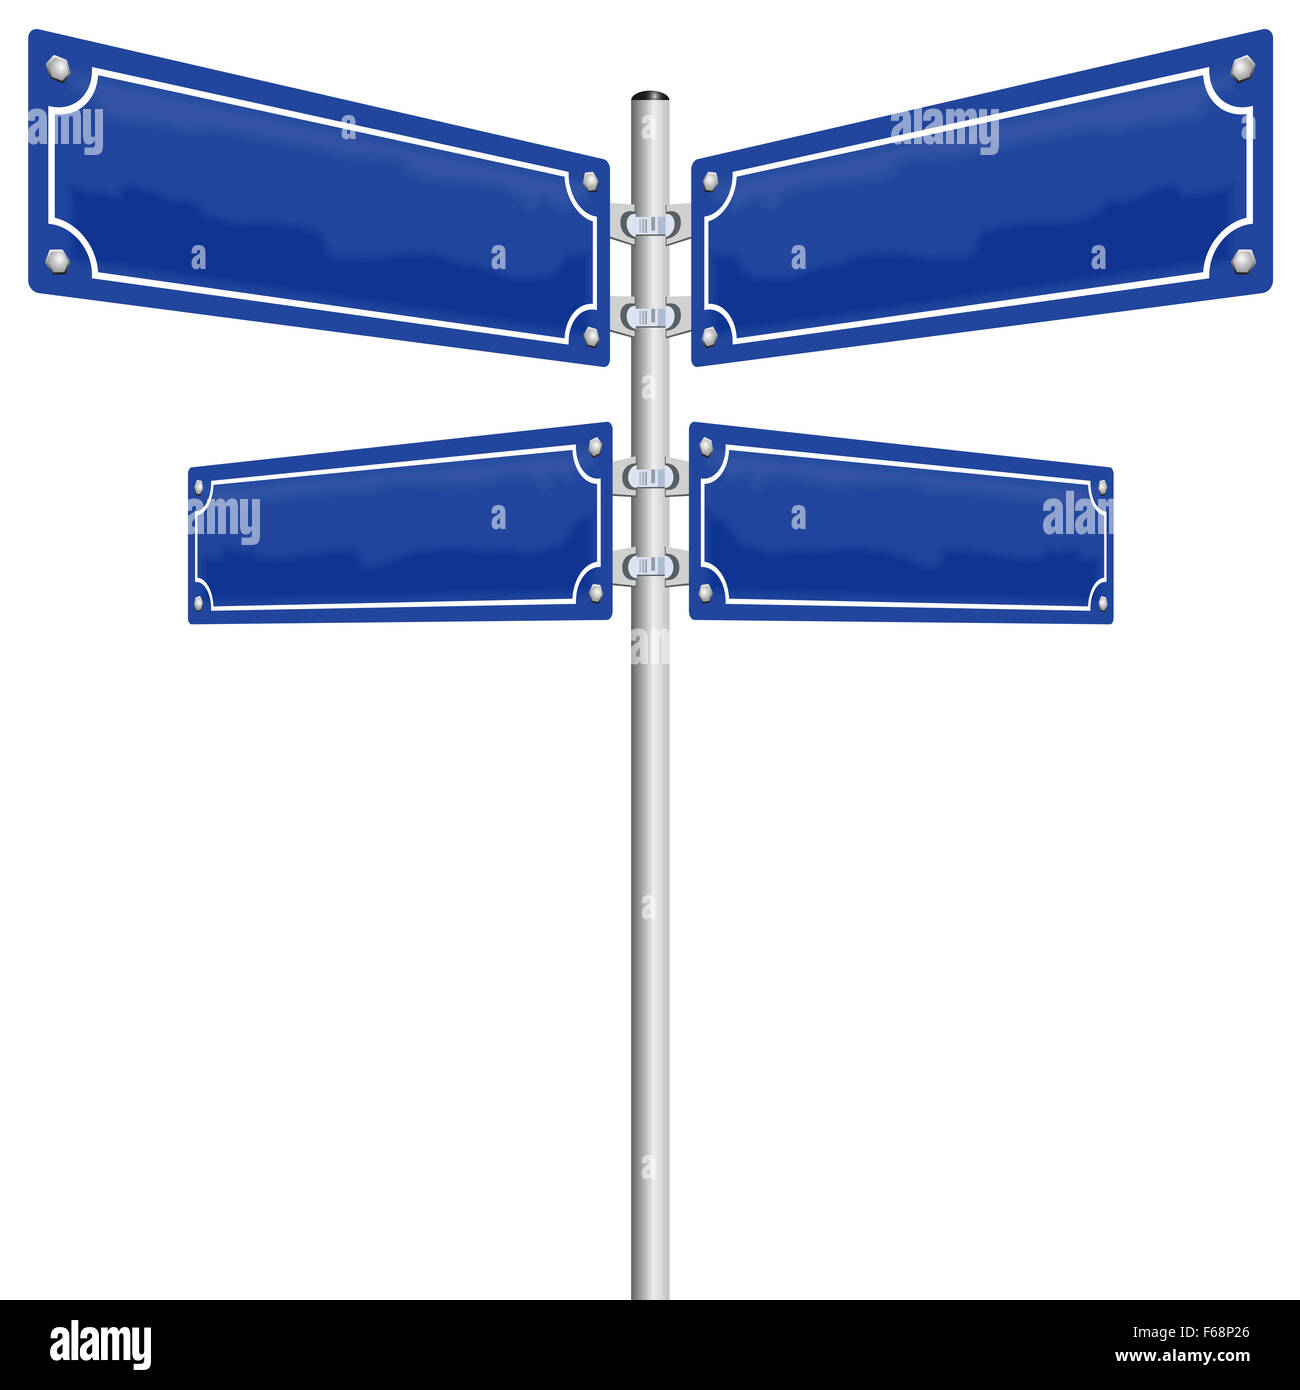 Segnaletica Stradale - quattro vuoto, blu lucido pannelli metallici che  mostra in quattro diverse direzioni. Immagine su sfondo bianco Foto stock -  Alamy